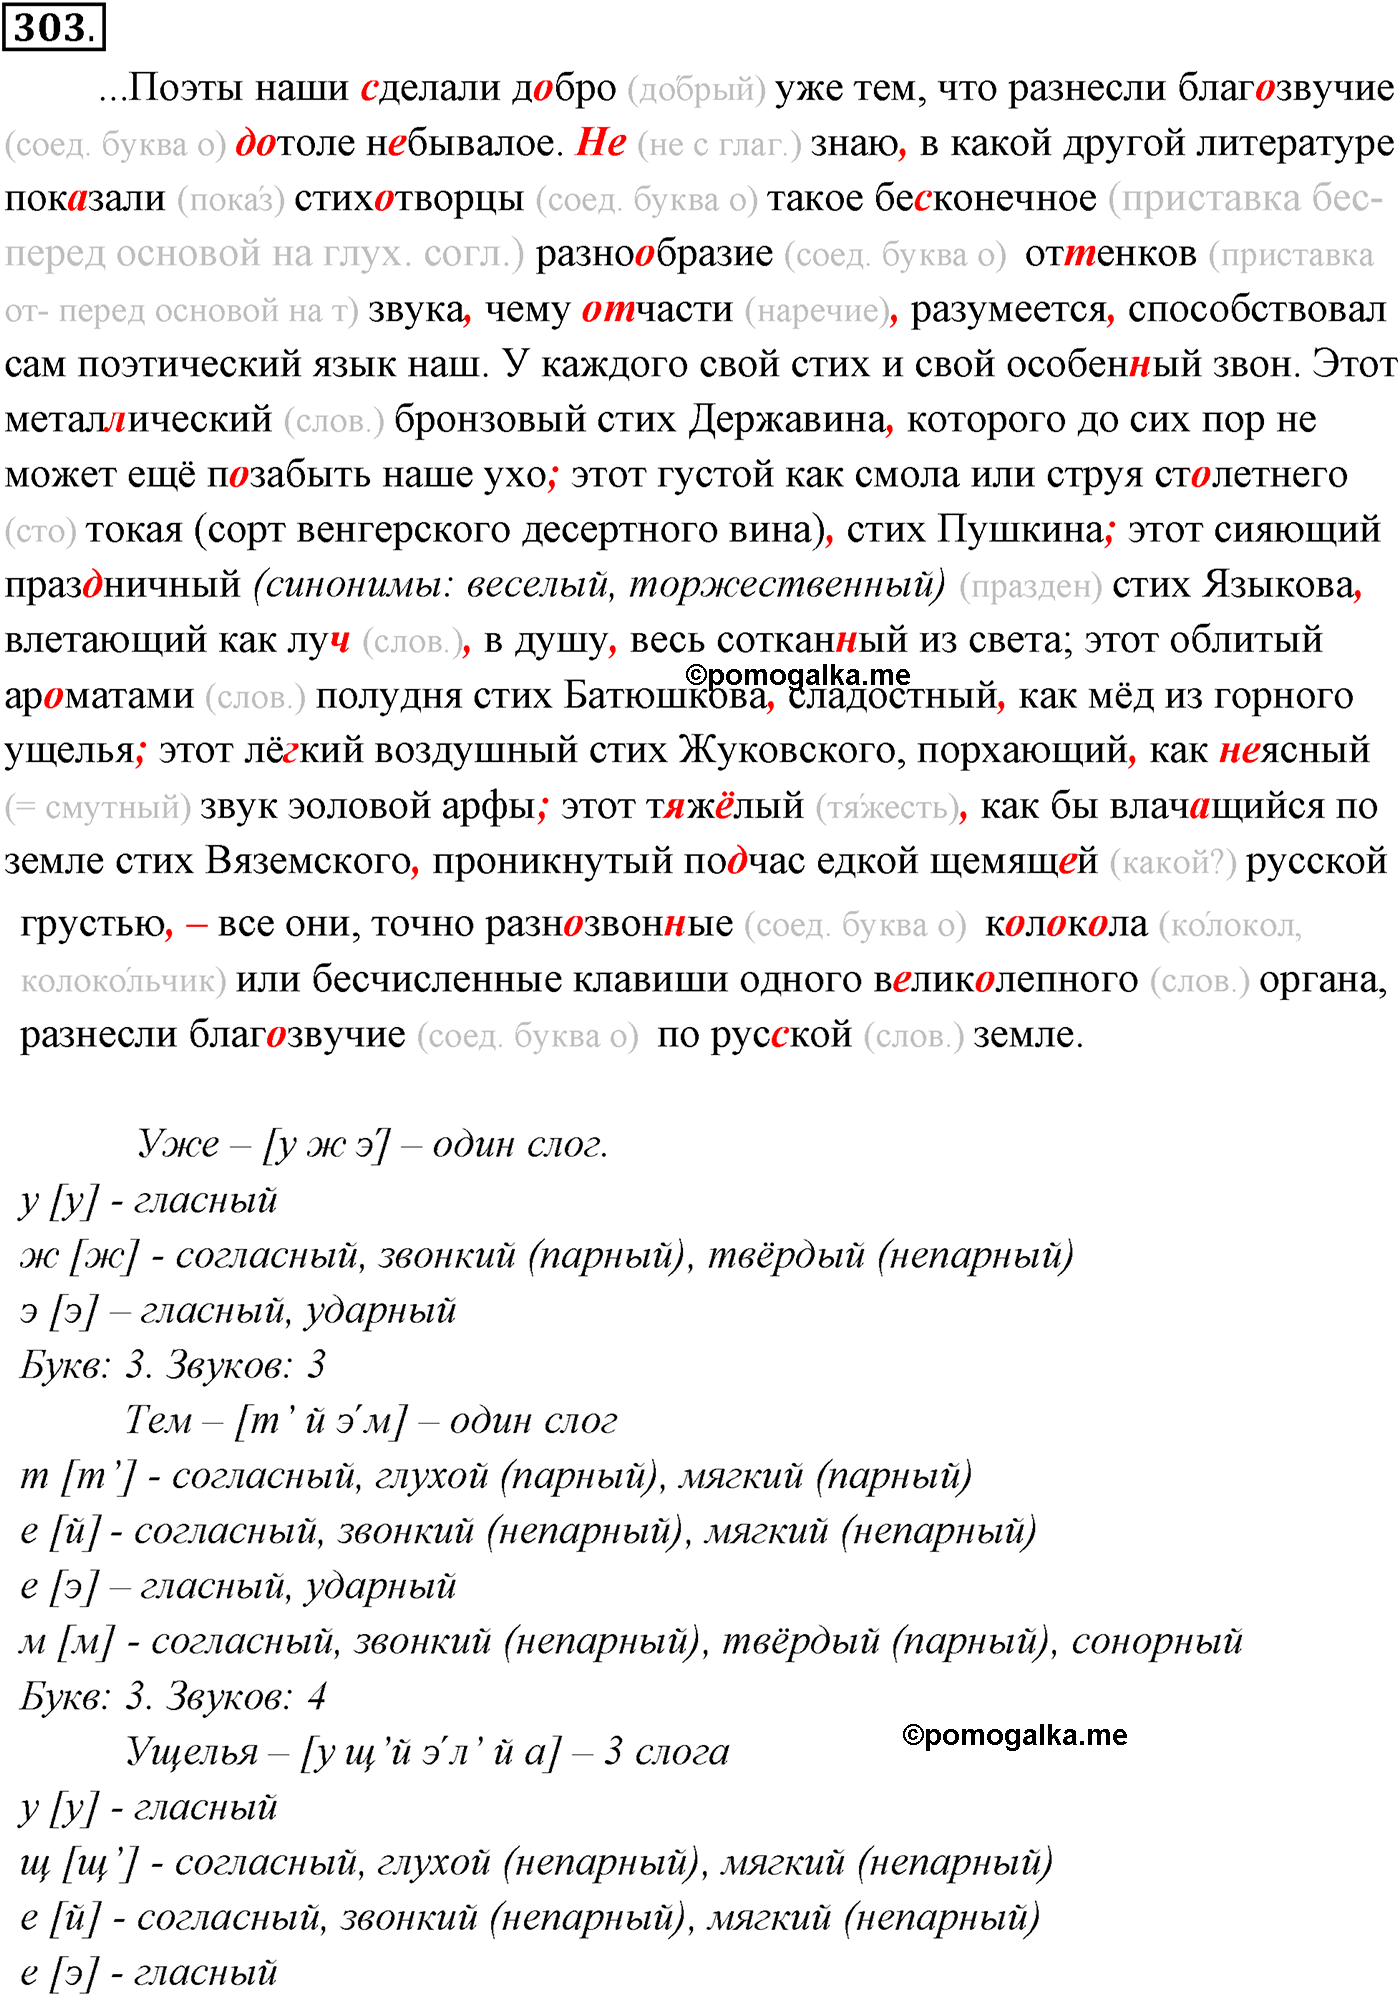 упражнение №303 русский язык 10-11 класс Власенков